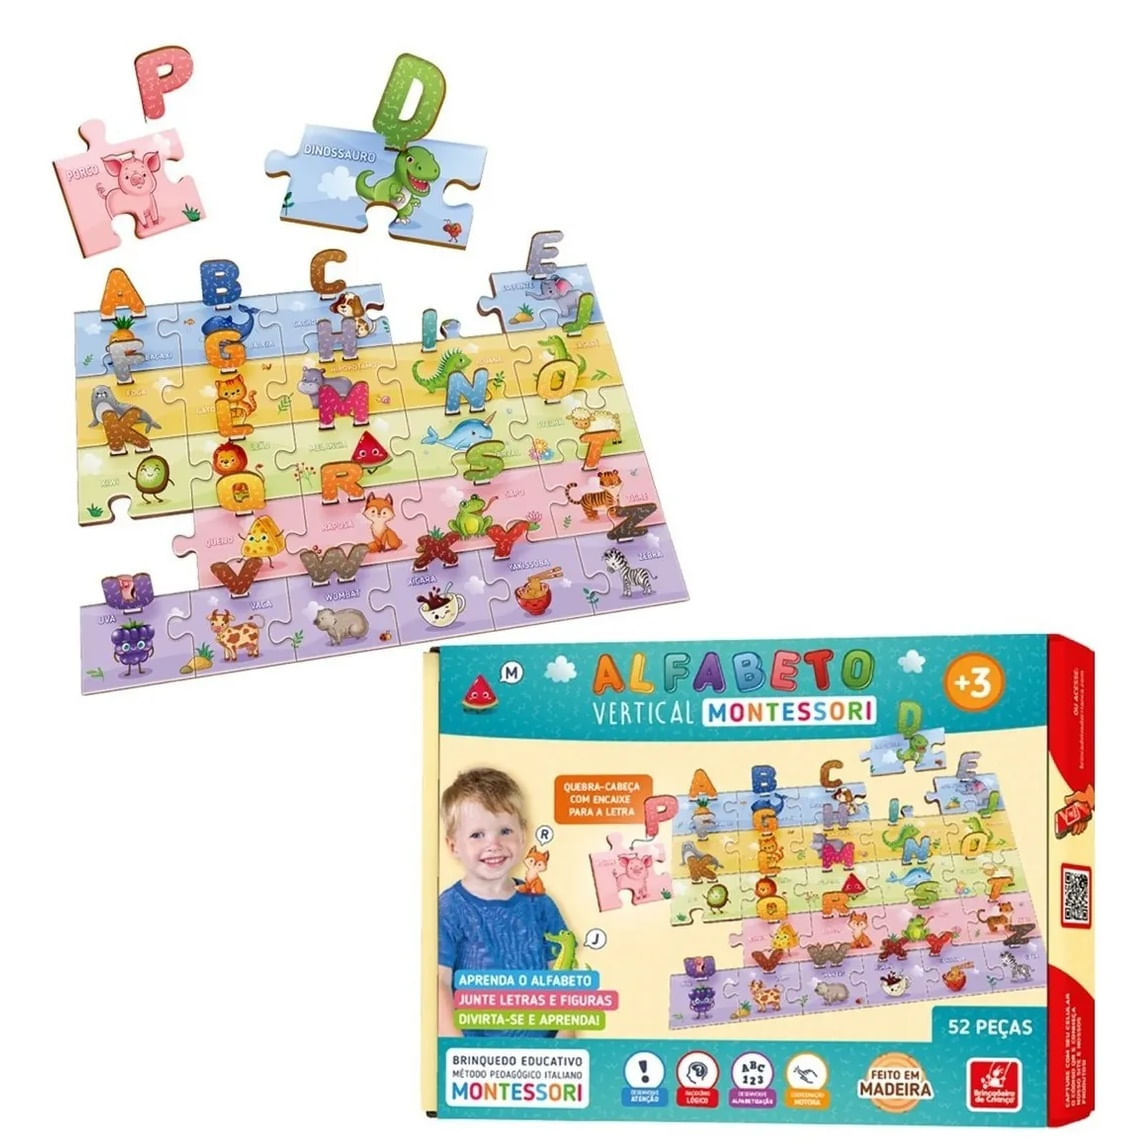 Melhor venda quente 24 pçs quebra-cabeça de madeira montessori placa  pré-escolar fácil puzzle board brinquedo meninas meninos presente  brinquedos educativos - AliExpress